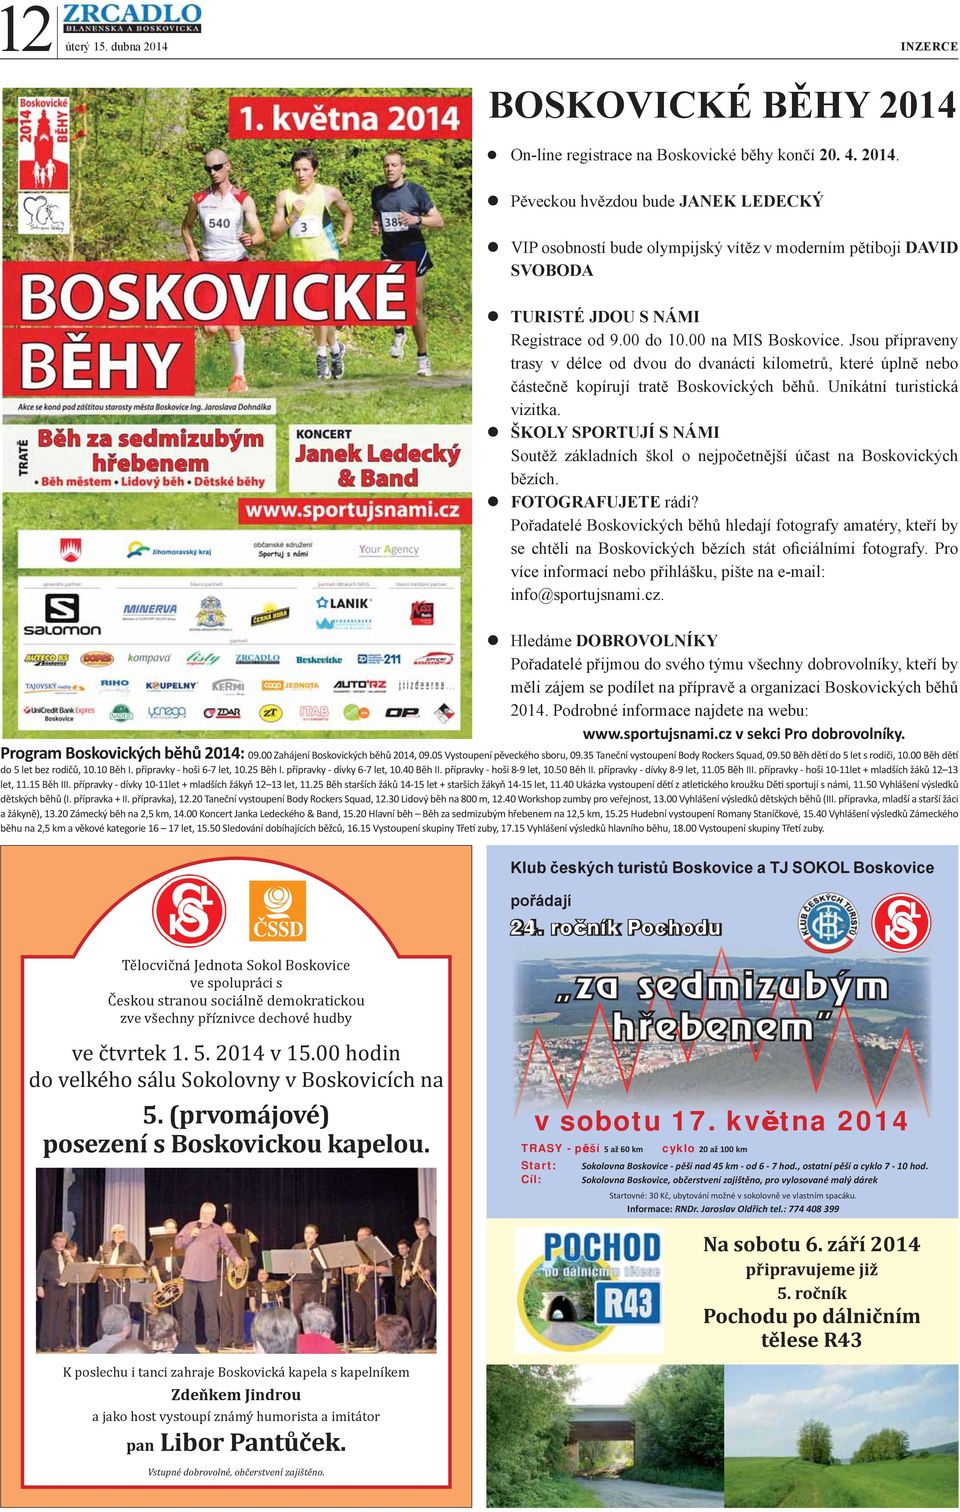 On-line registrace na Boskovické běhy končí 20. 4. 2014.